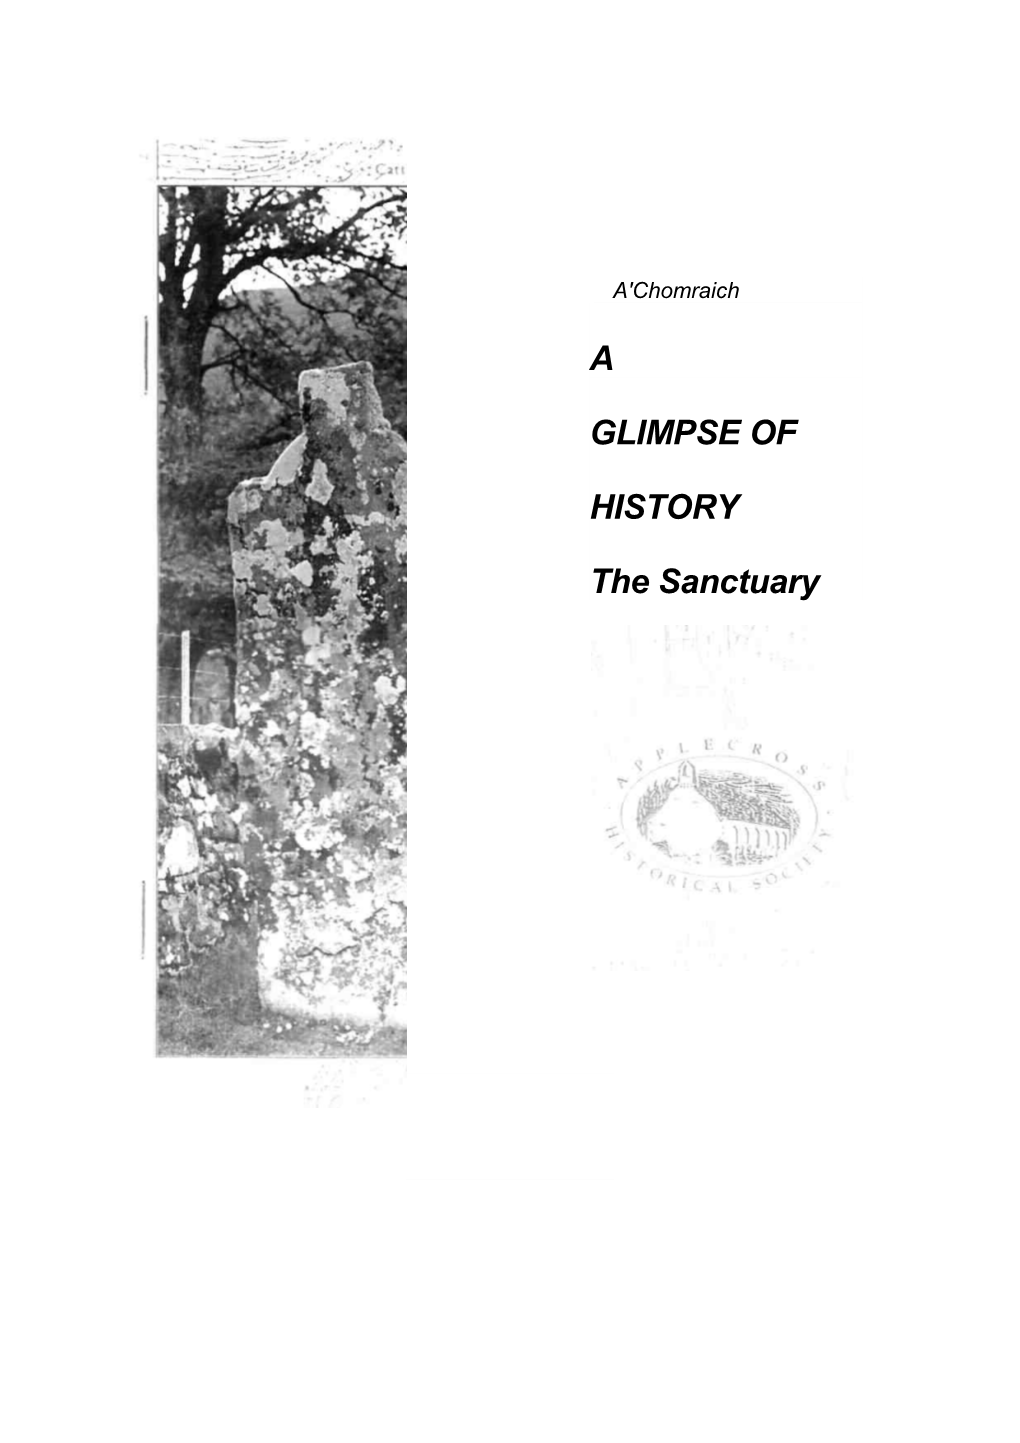 A' Chomraich APPLECROSS the Sanctuary